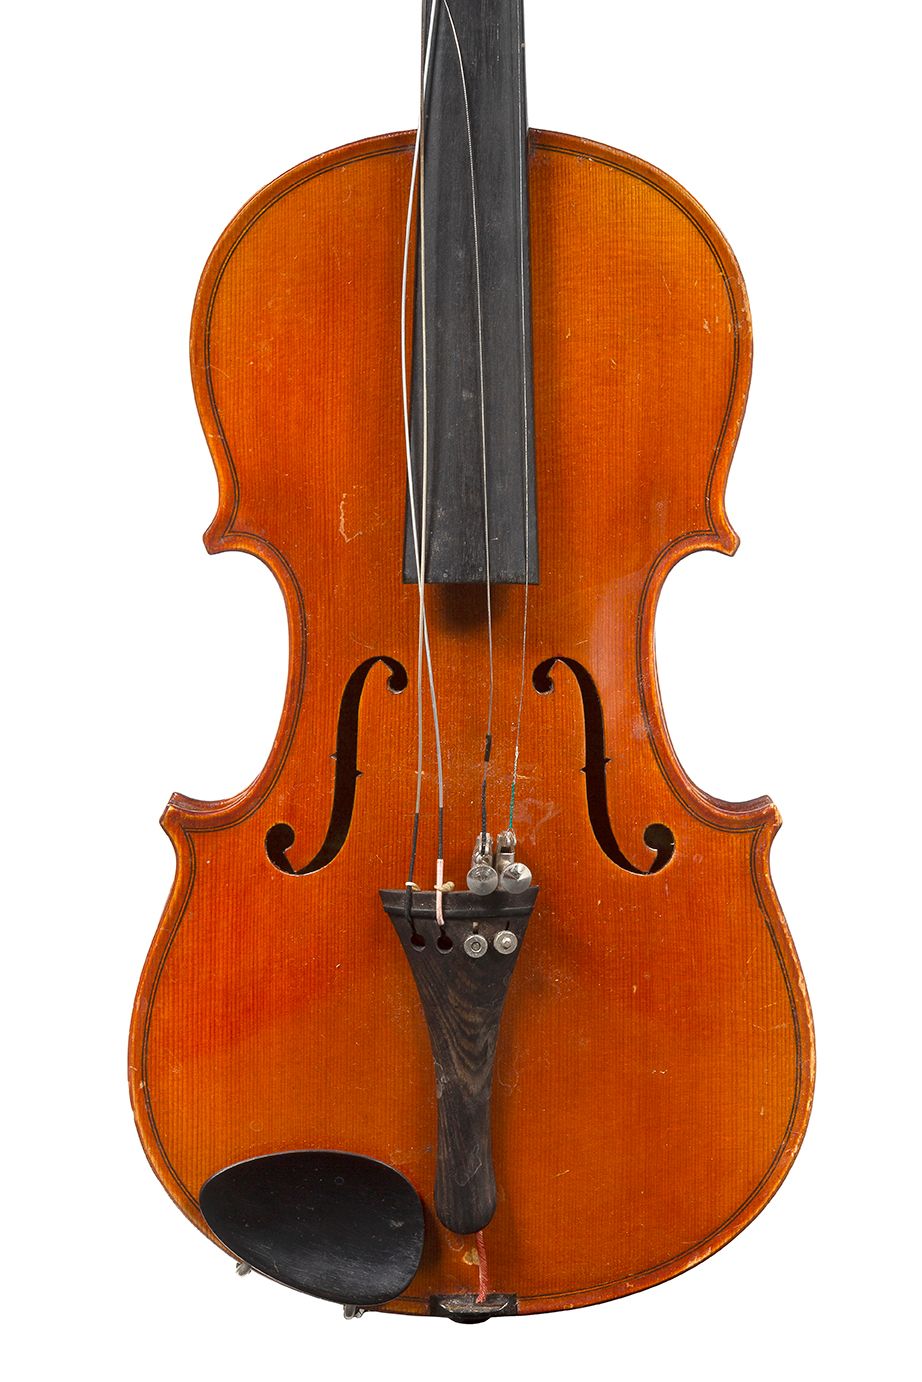 Null 米勒库尔制造的1/2号小提琴
拉贝尔特家族的作品
状况非常好 
背面316毫米